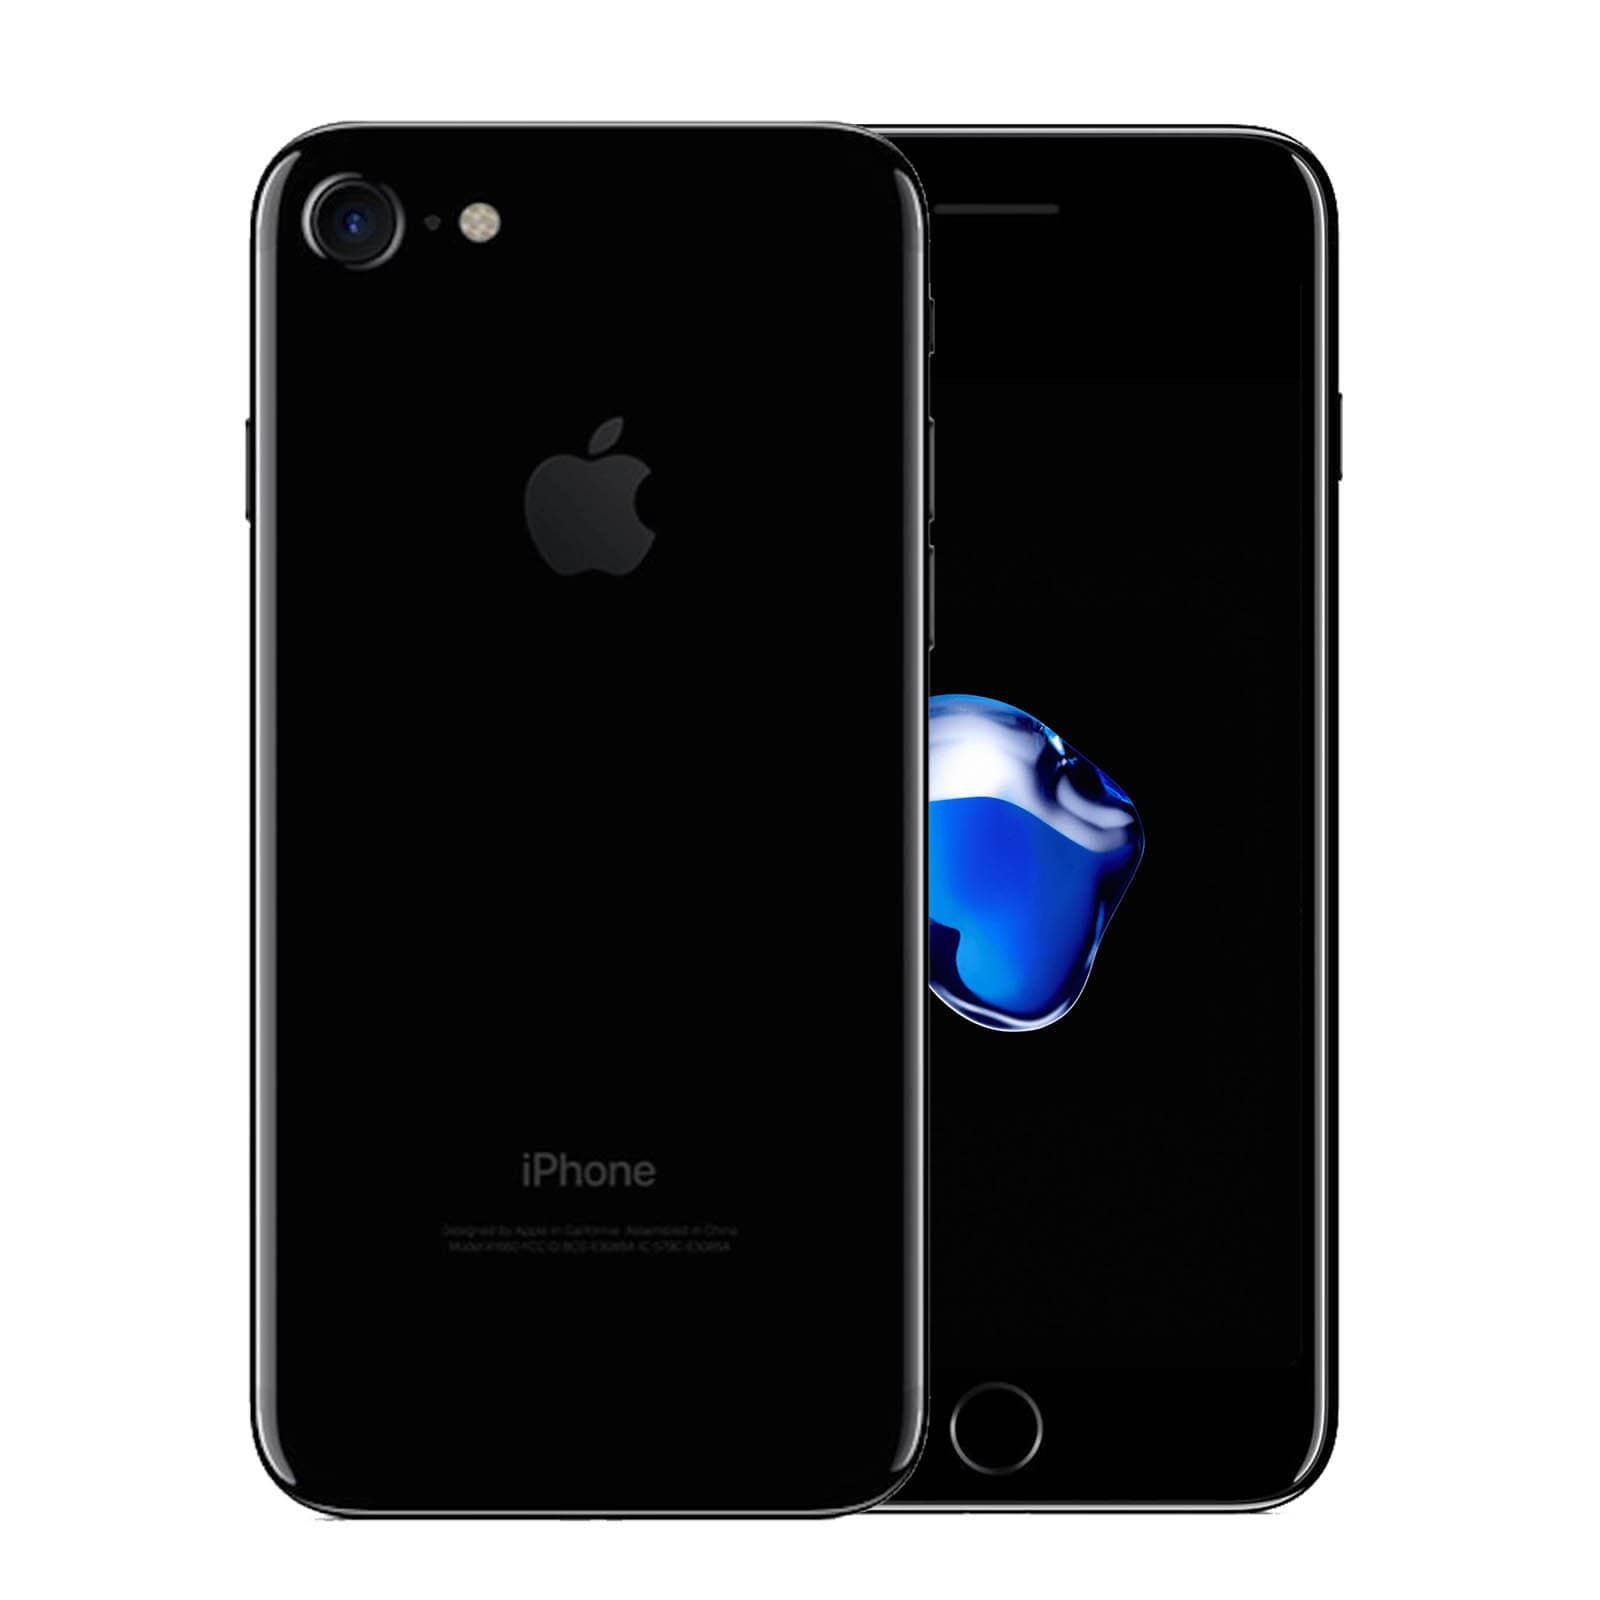 Apple iPhone 7 128GB Jet Black Fair - Unlocked